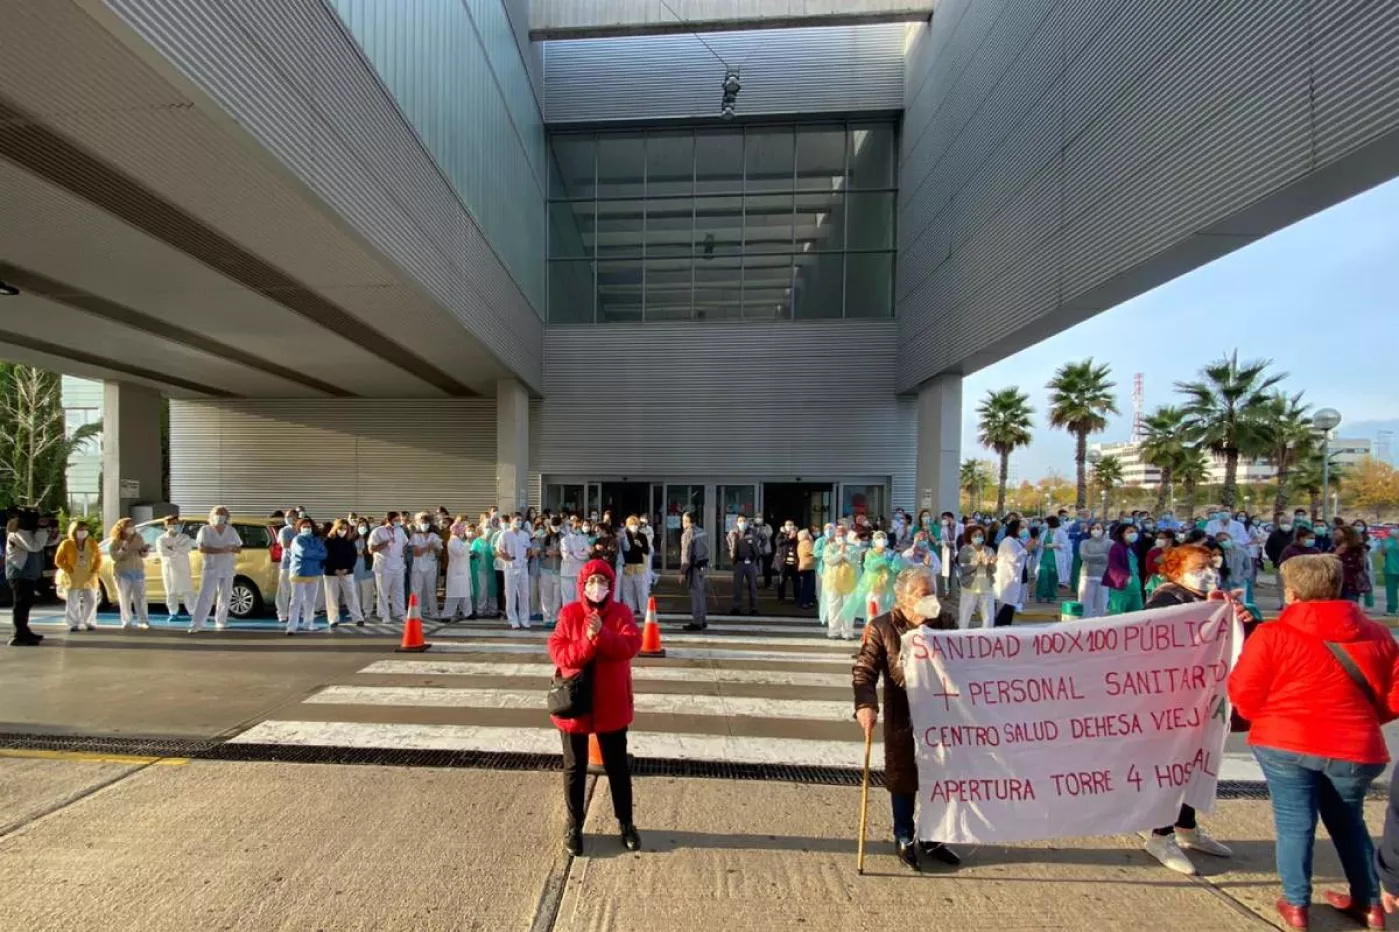 Protesta sindical reclamando la apertura de otra sala de UCI y la Torre 4 del Hospital Universitario Infanta Sofía (Amtys)